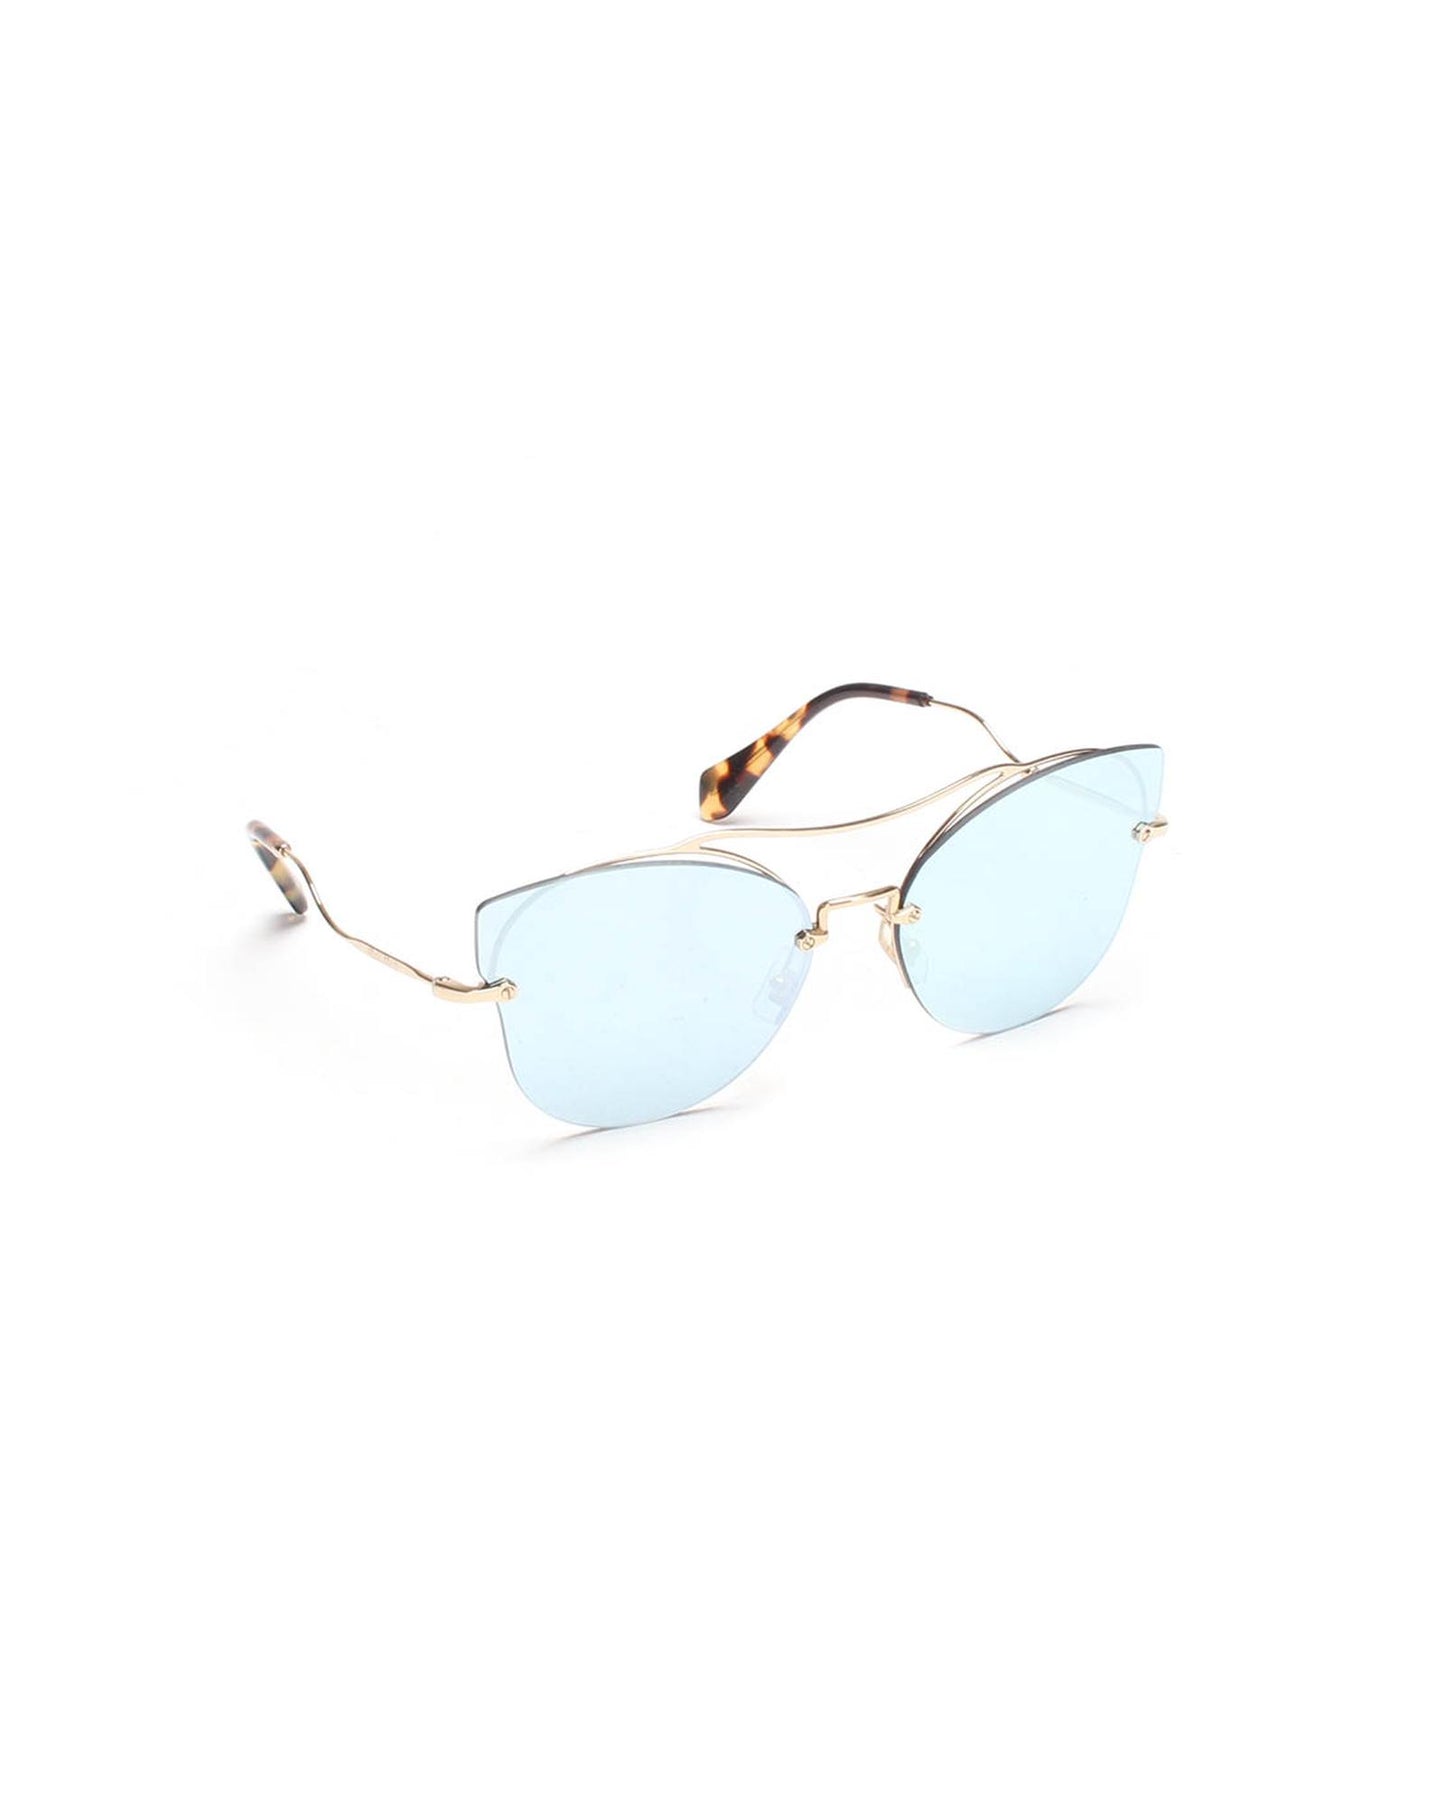 Miu Miu Women's Mirrored Cat Eye Sunglasses in Gold